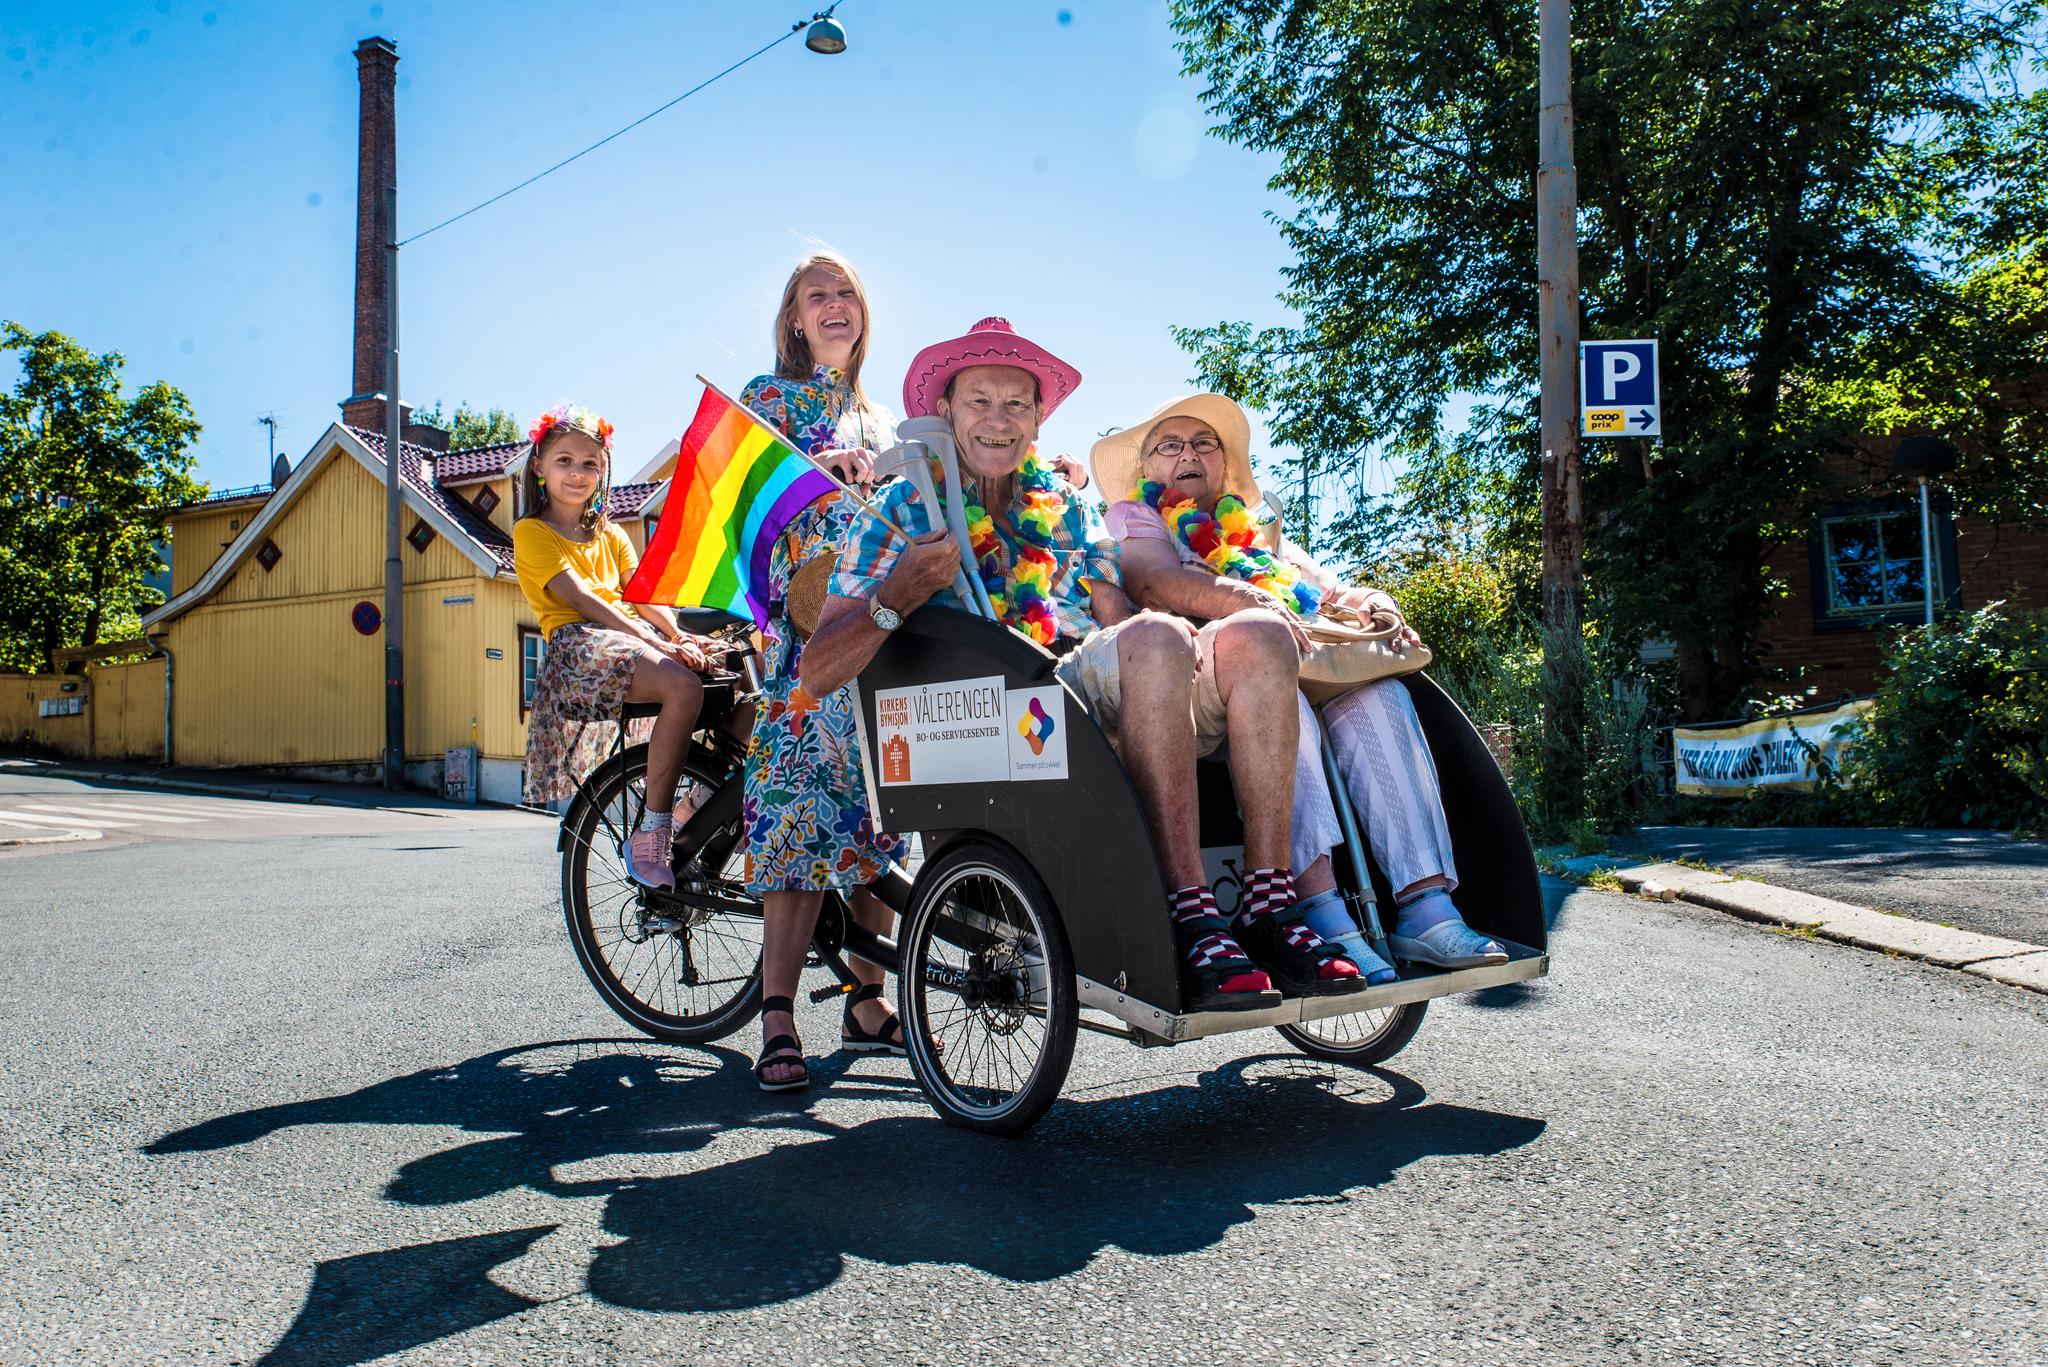   Emil Flaten Gansmoe (82) og Birthe Andersson (87) kunne for første gang delta i Pride-paraden som elsykkelpassasjerer. Sol Gangsaas og Lykke Gangsaas Jonassen (9) er sjåfører.